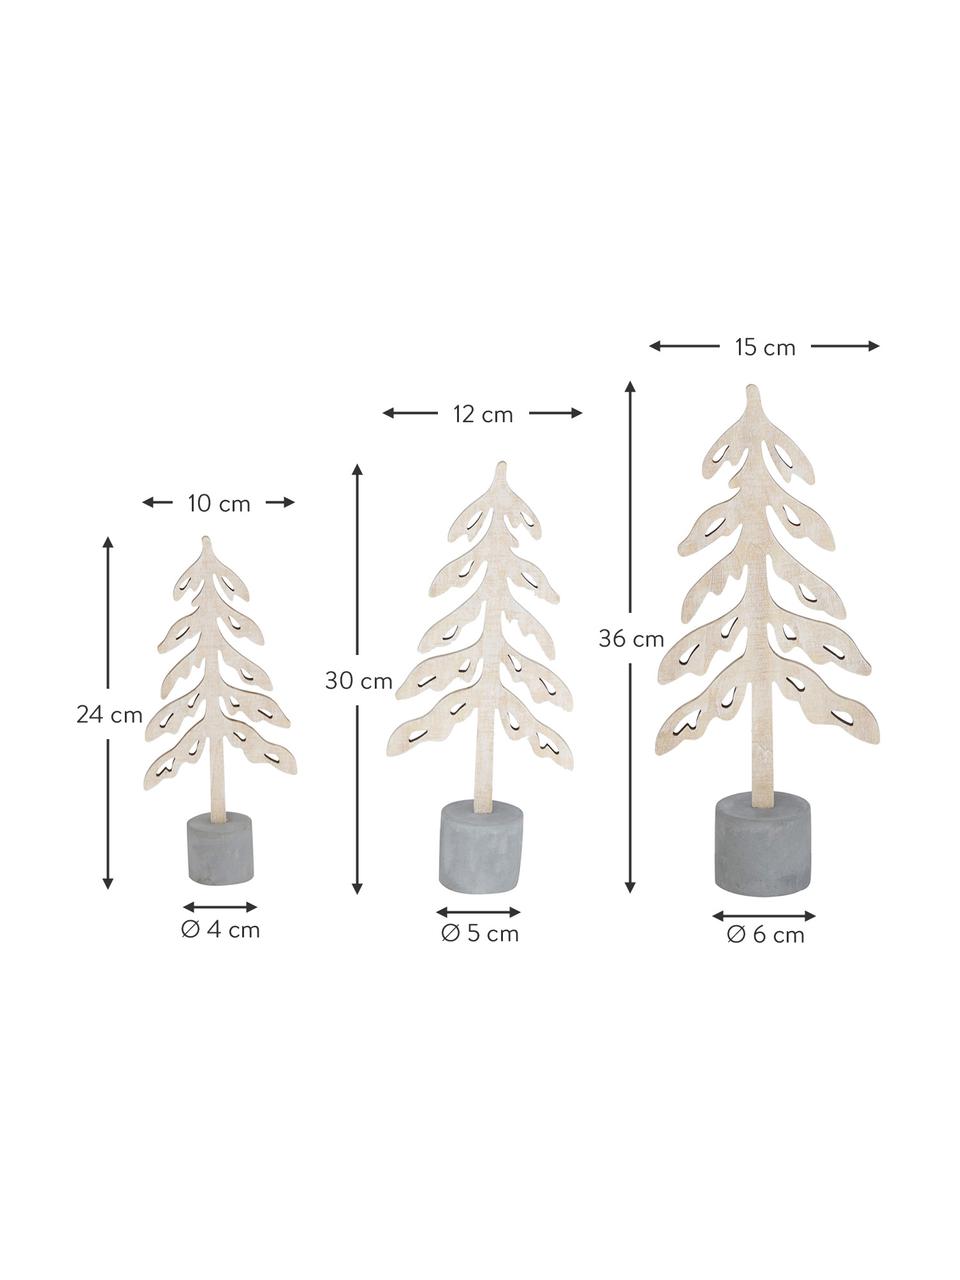 Deko-Bäume-Set Mattern, 3 Stück, Beton, Sperrholz, Grau, Helles Holz, Set mit verschiedenen Grössen